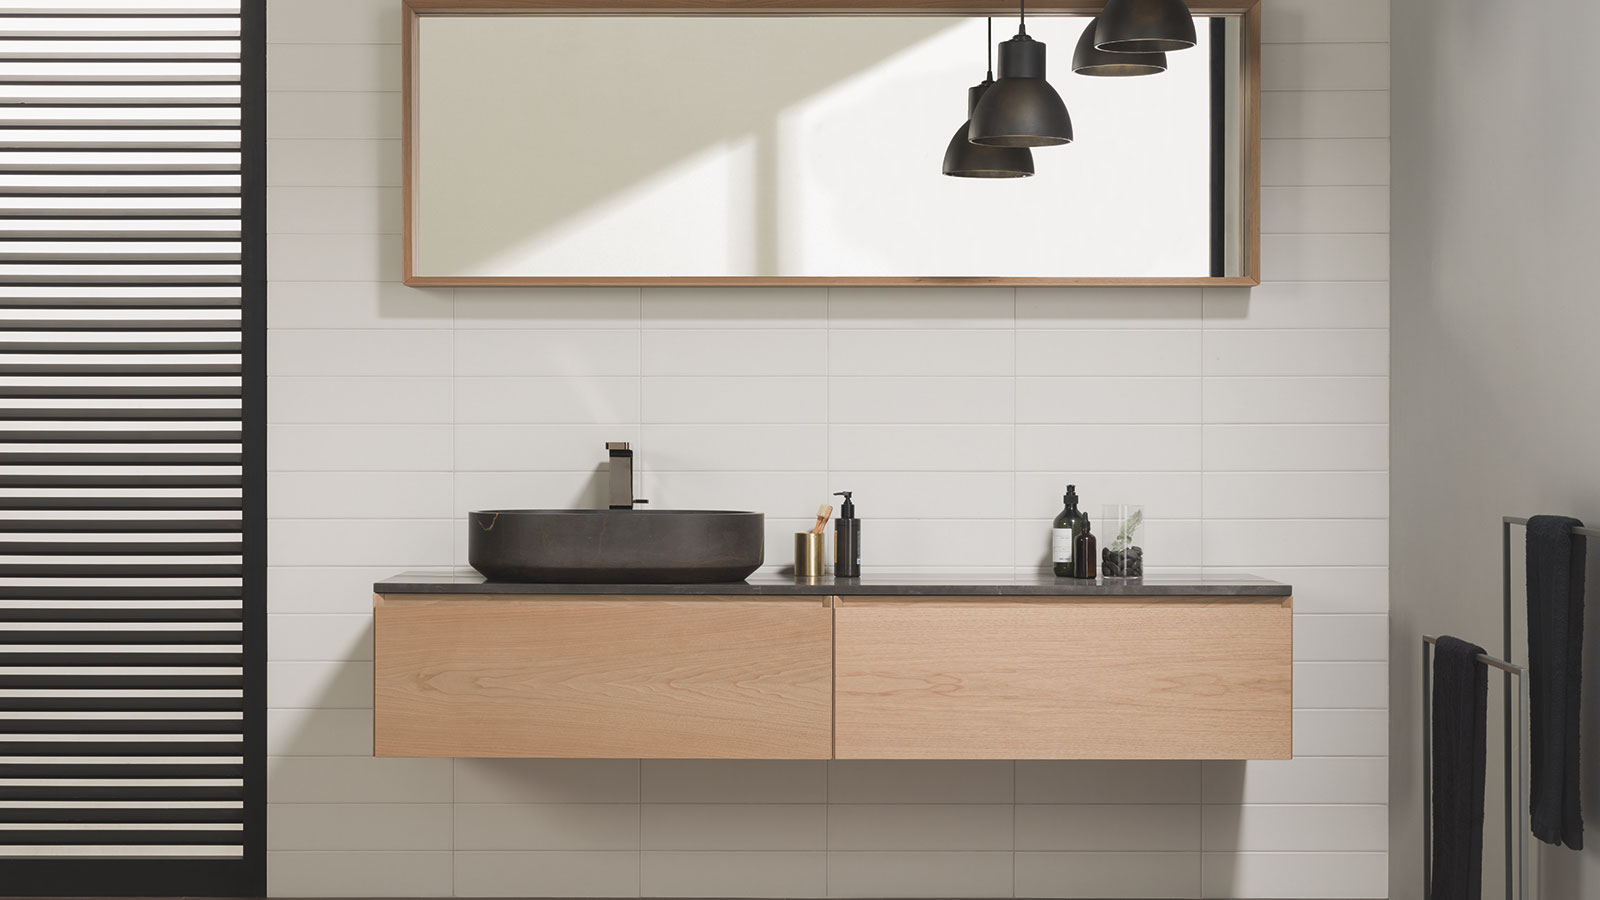 Come scegliere i mobili per il bagno: design esclusivi che potenziano l’ordine e lo spazio per riporre oggetti